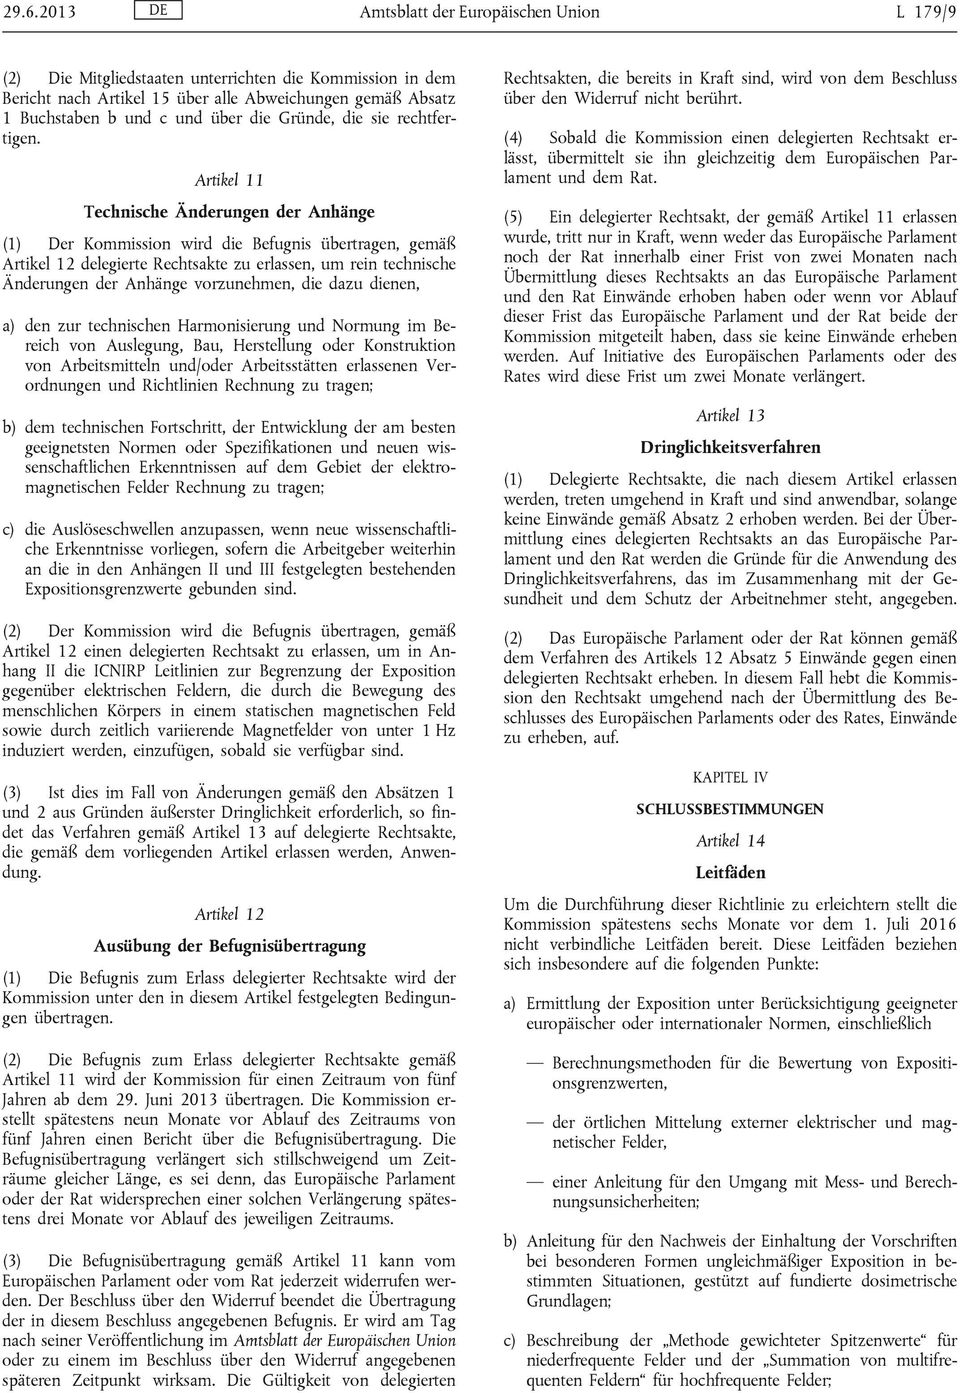 Artikel 11 Technische Änderungen der Anhänge (1) Der Kommission wird die Befugnis übertragen, gemäß Artikel 12 delegierte Rechtsakte zu erlassen, um rein technische Änderungen der Anhänge